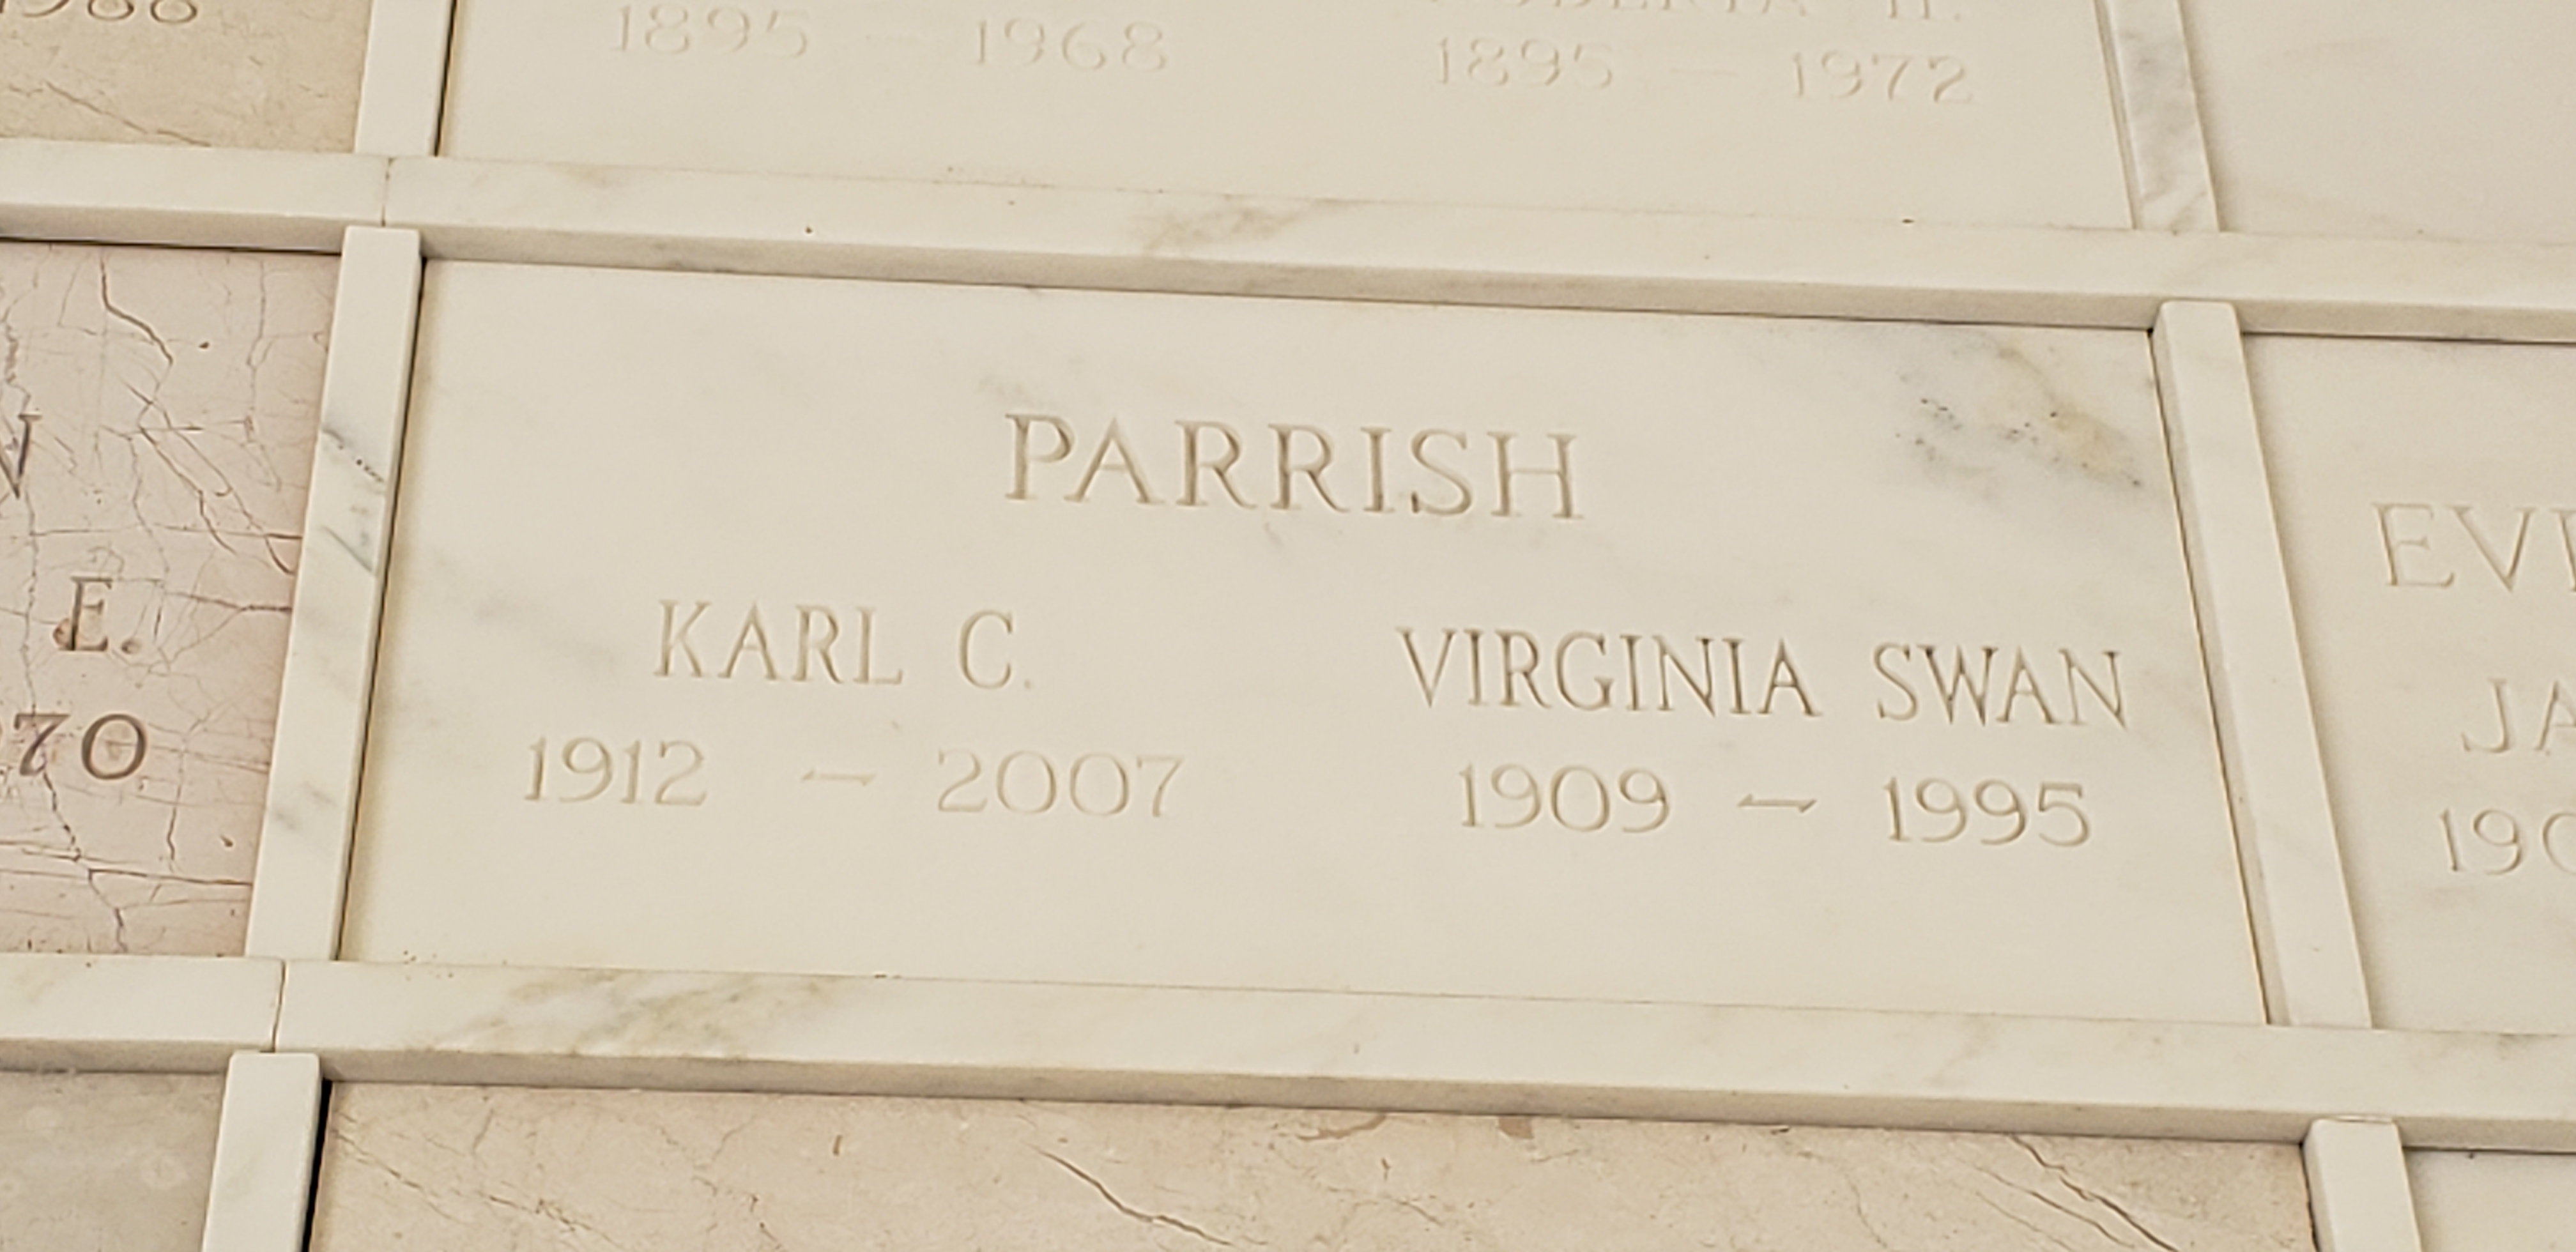 Virginia Swan Parrish